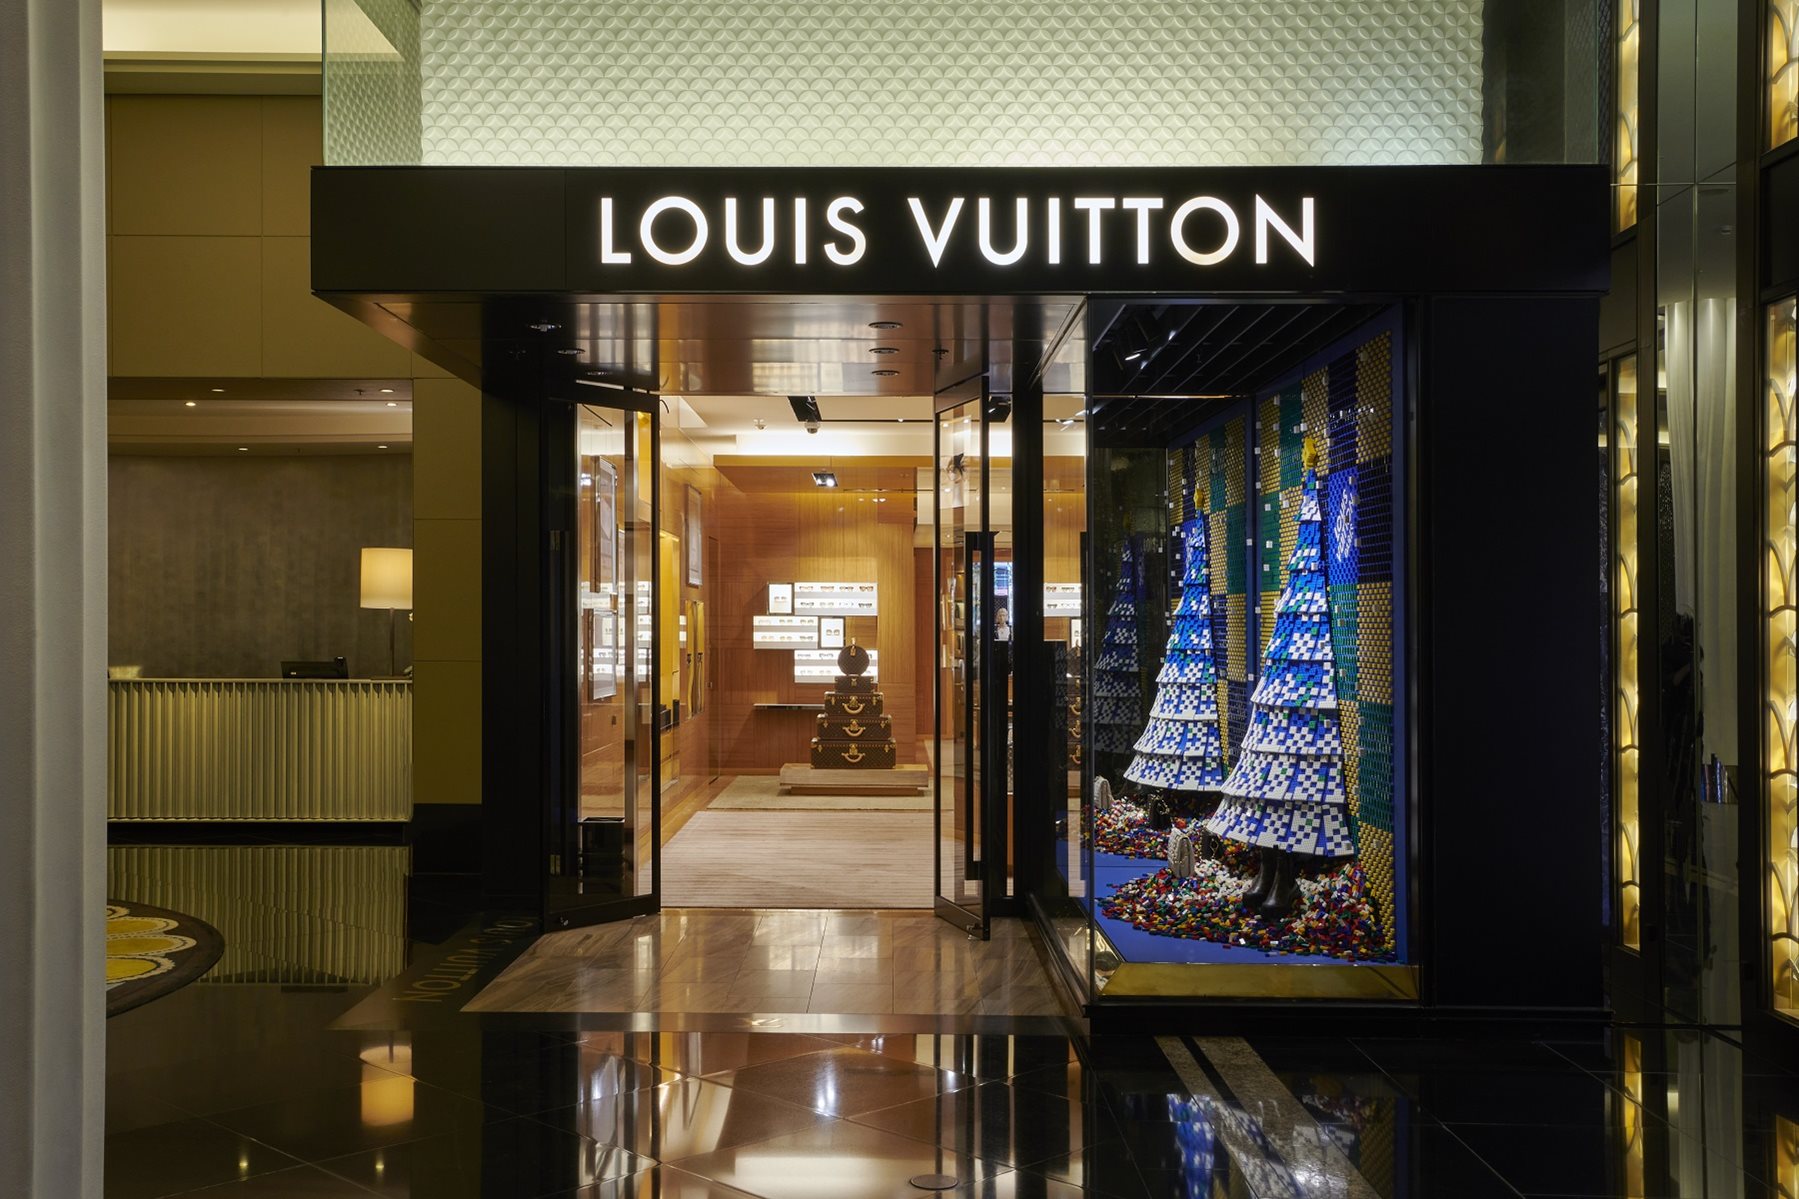 Louis Vuitton Melbourne.